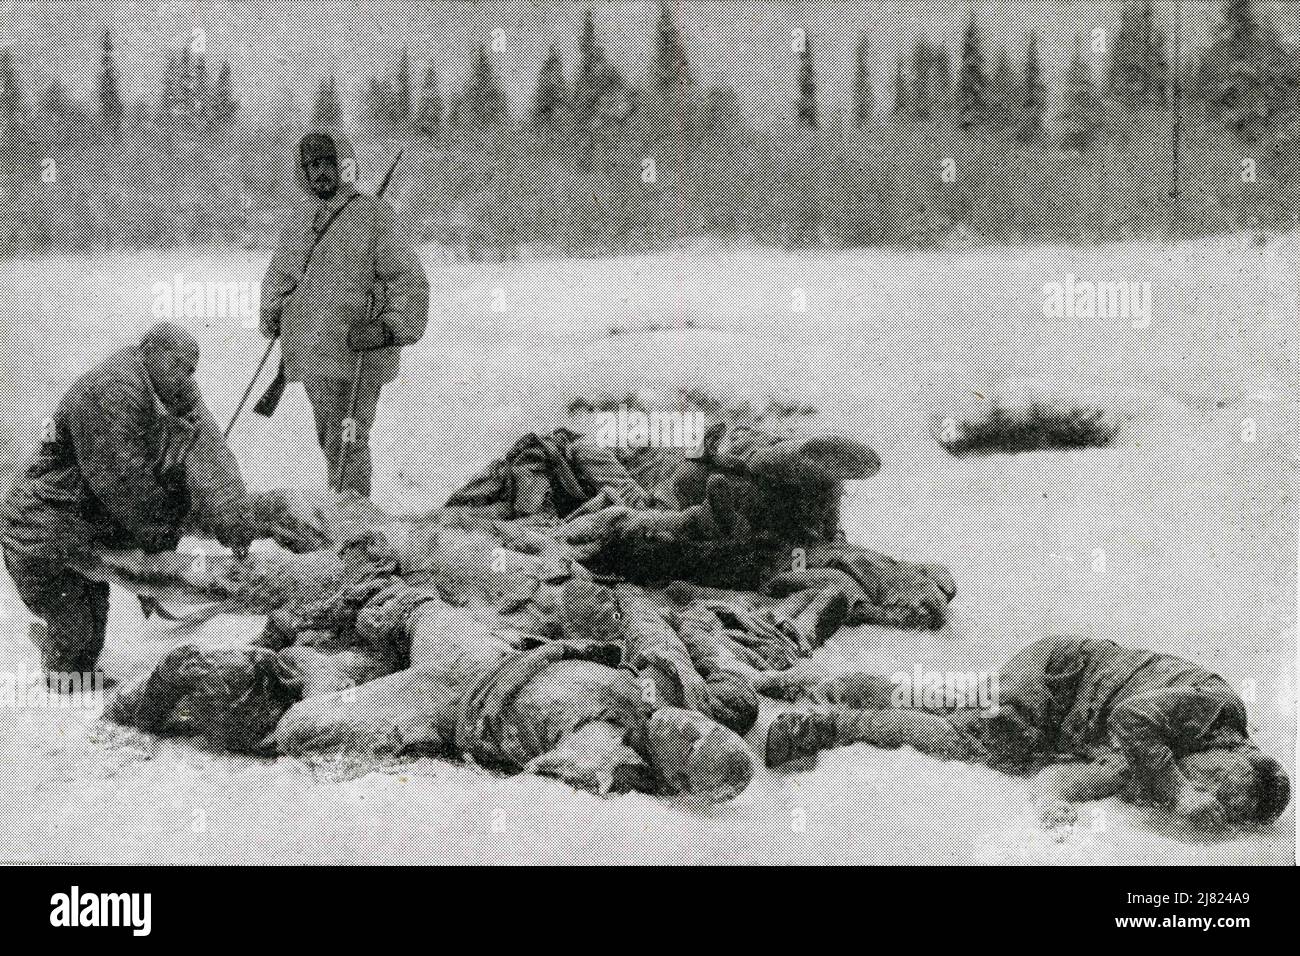 Sur le front nord finlandais de la guerre russo-finlandaise, les cadavres russes gelés qui se trouvent sur le sol illustrent le terrible froid dans lequel les armées opposées ont dû se battre. Finlande, Europe, le 31 décembre 1939. Banque D'Images